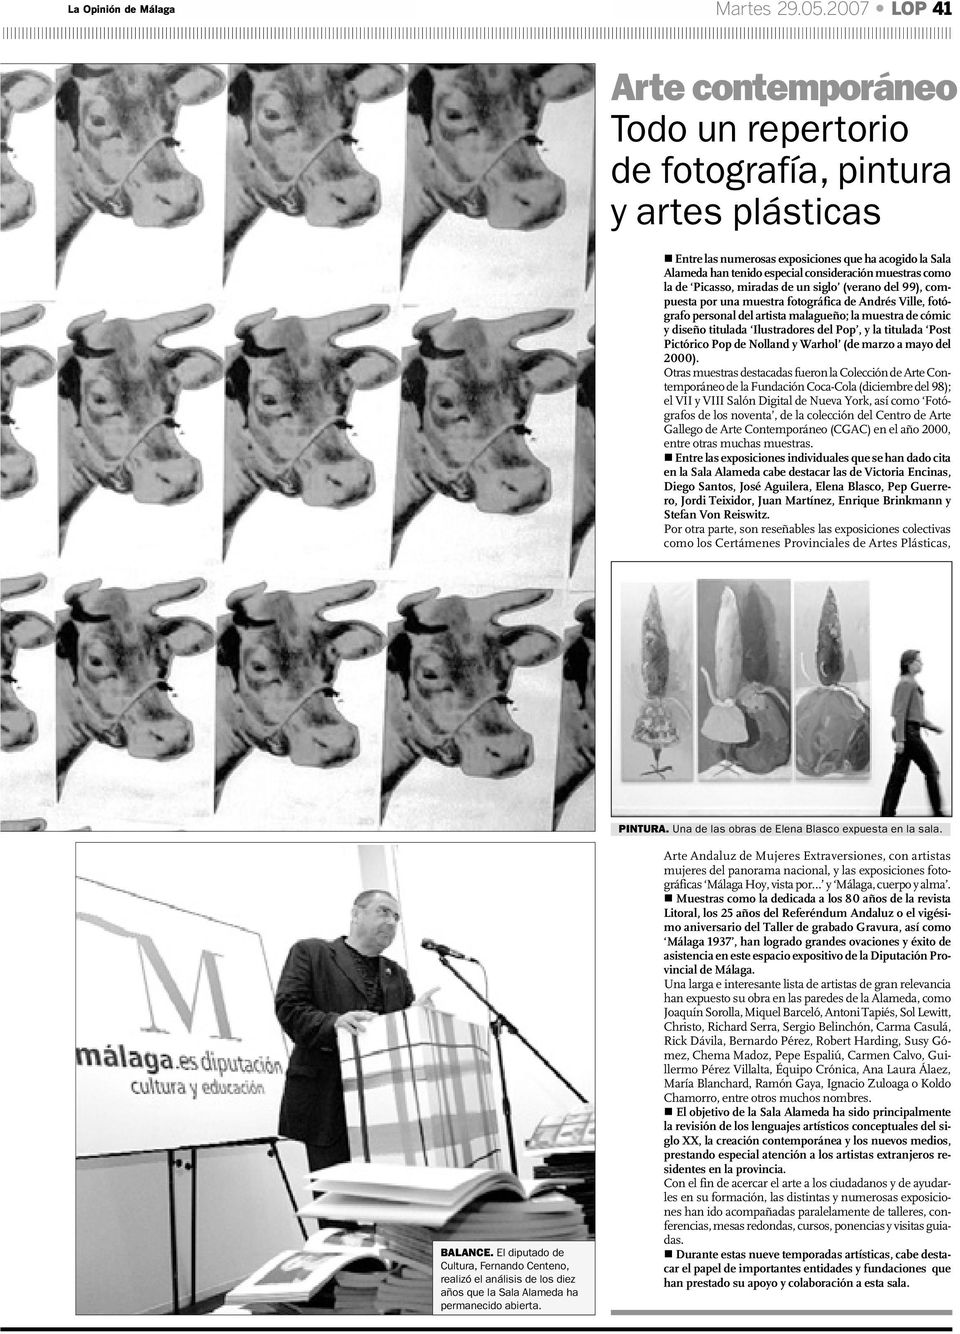 como la de Picasso, miradas de un siglo (verano del 99), compuesta por una muestra fotográfica de Andrés Ville, fotógrafo personal del artista malagueño; la muestra de cómic y diseño titulada